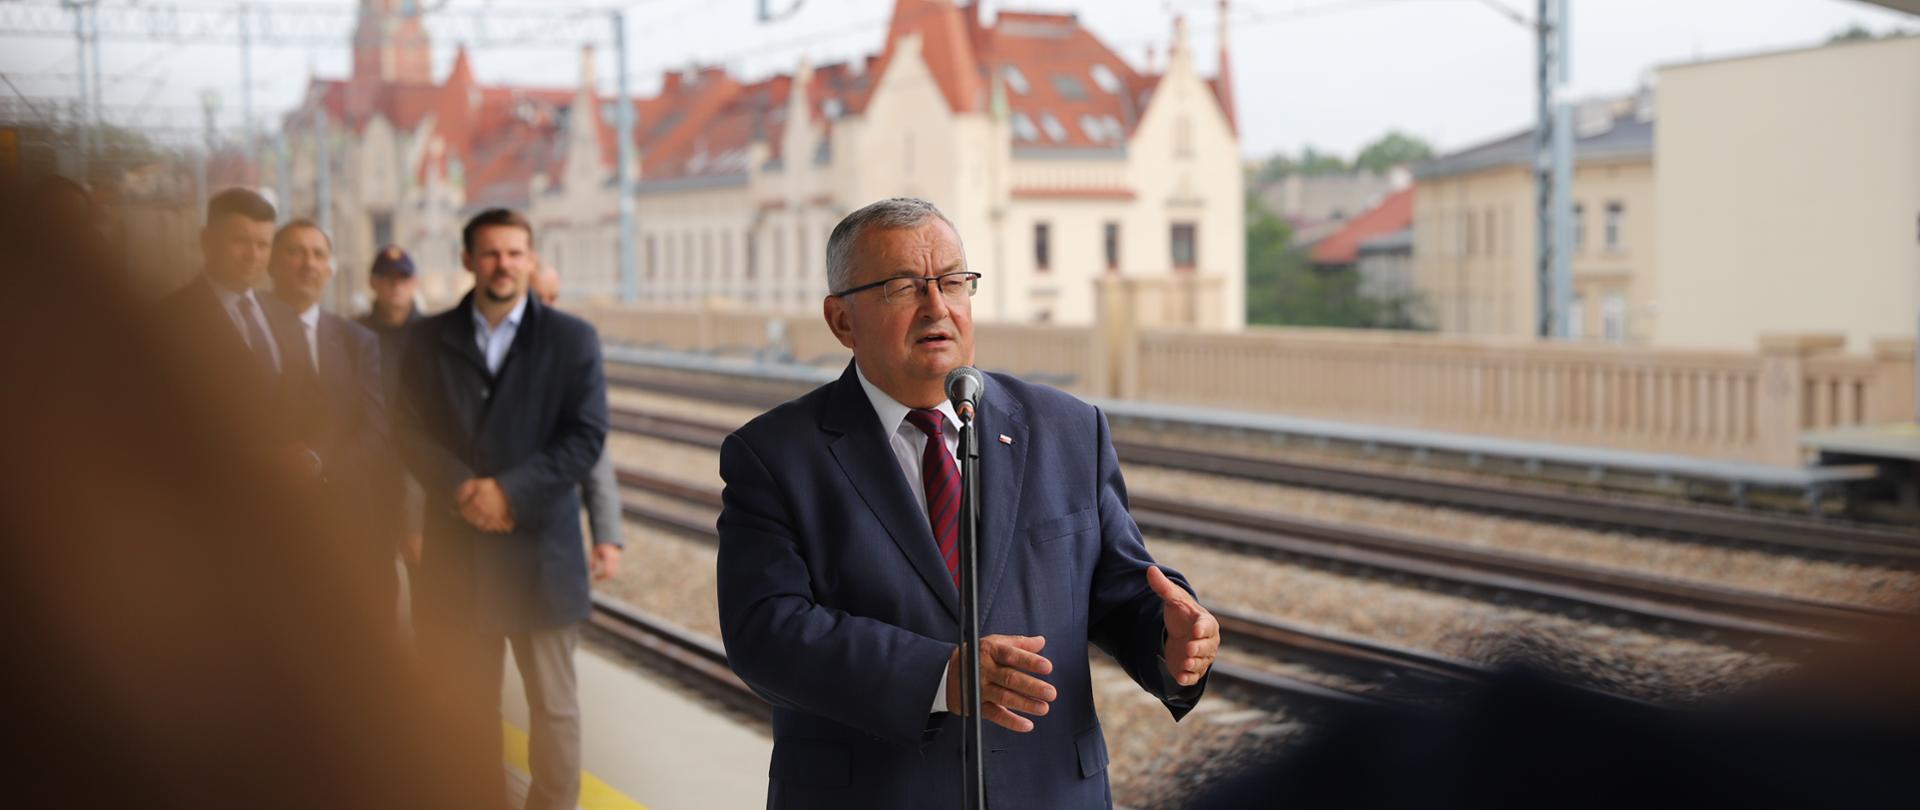 Minister infrastruktury Andrzej Adamczyk w trakcie konferencji prasowej na peronie przystanku kolejowego Kraków Grzegórzki